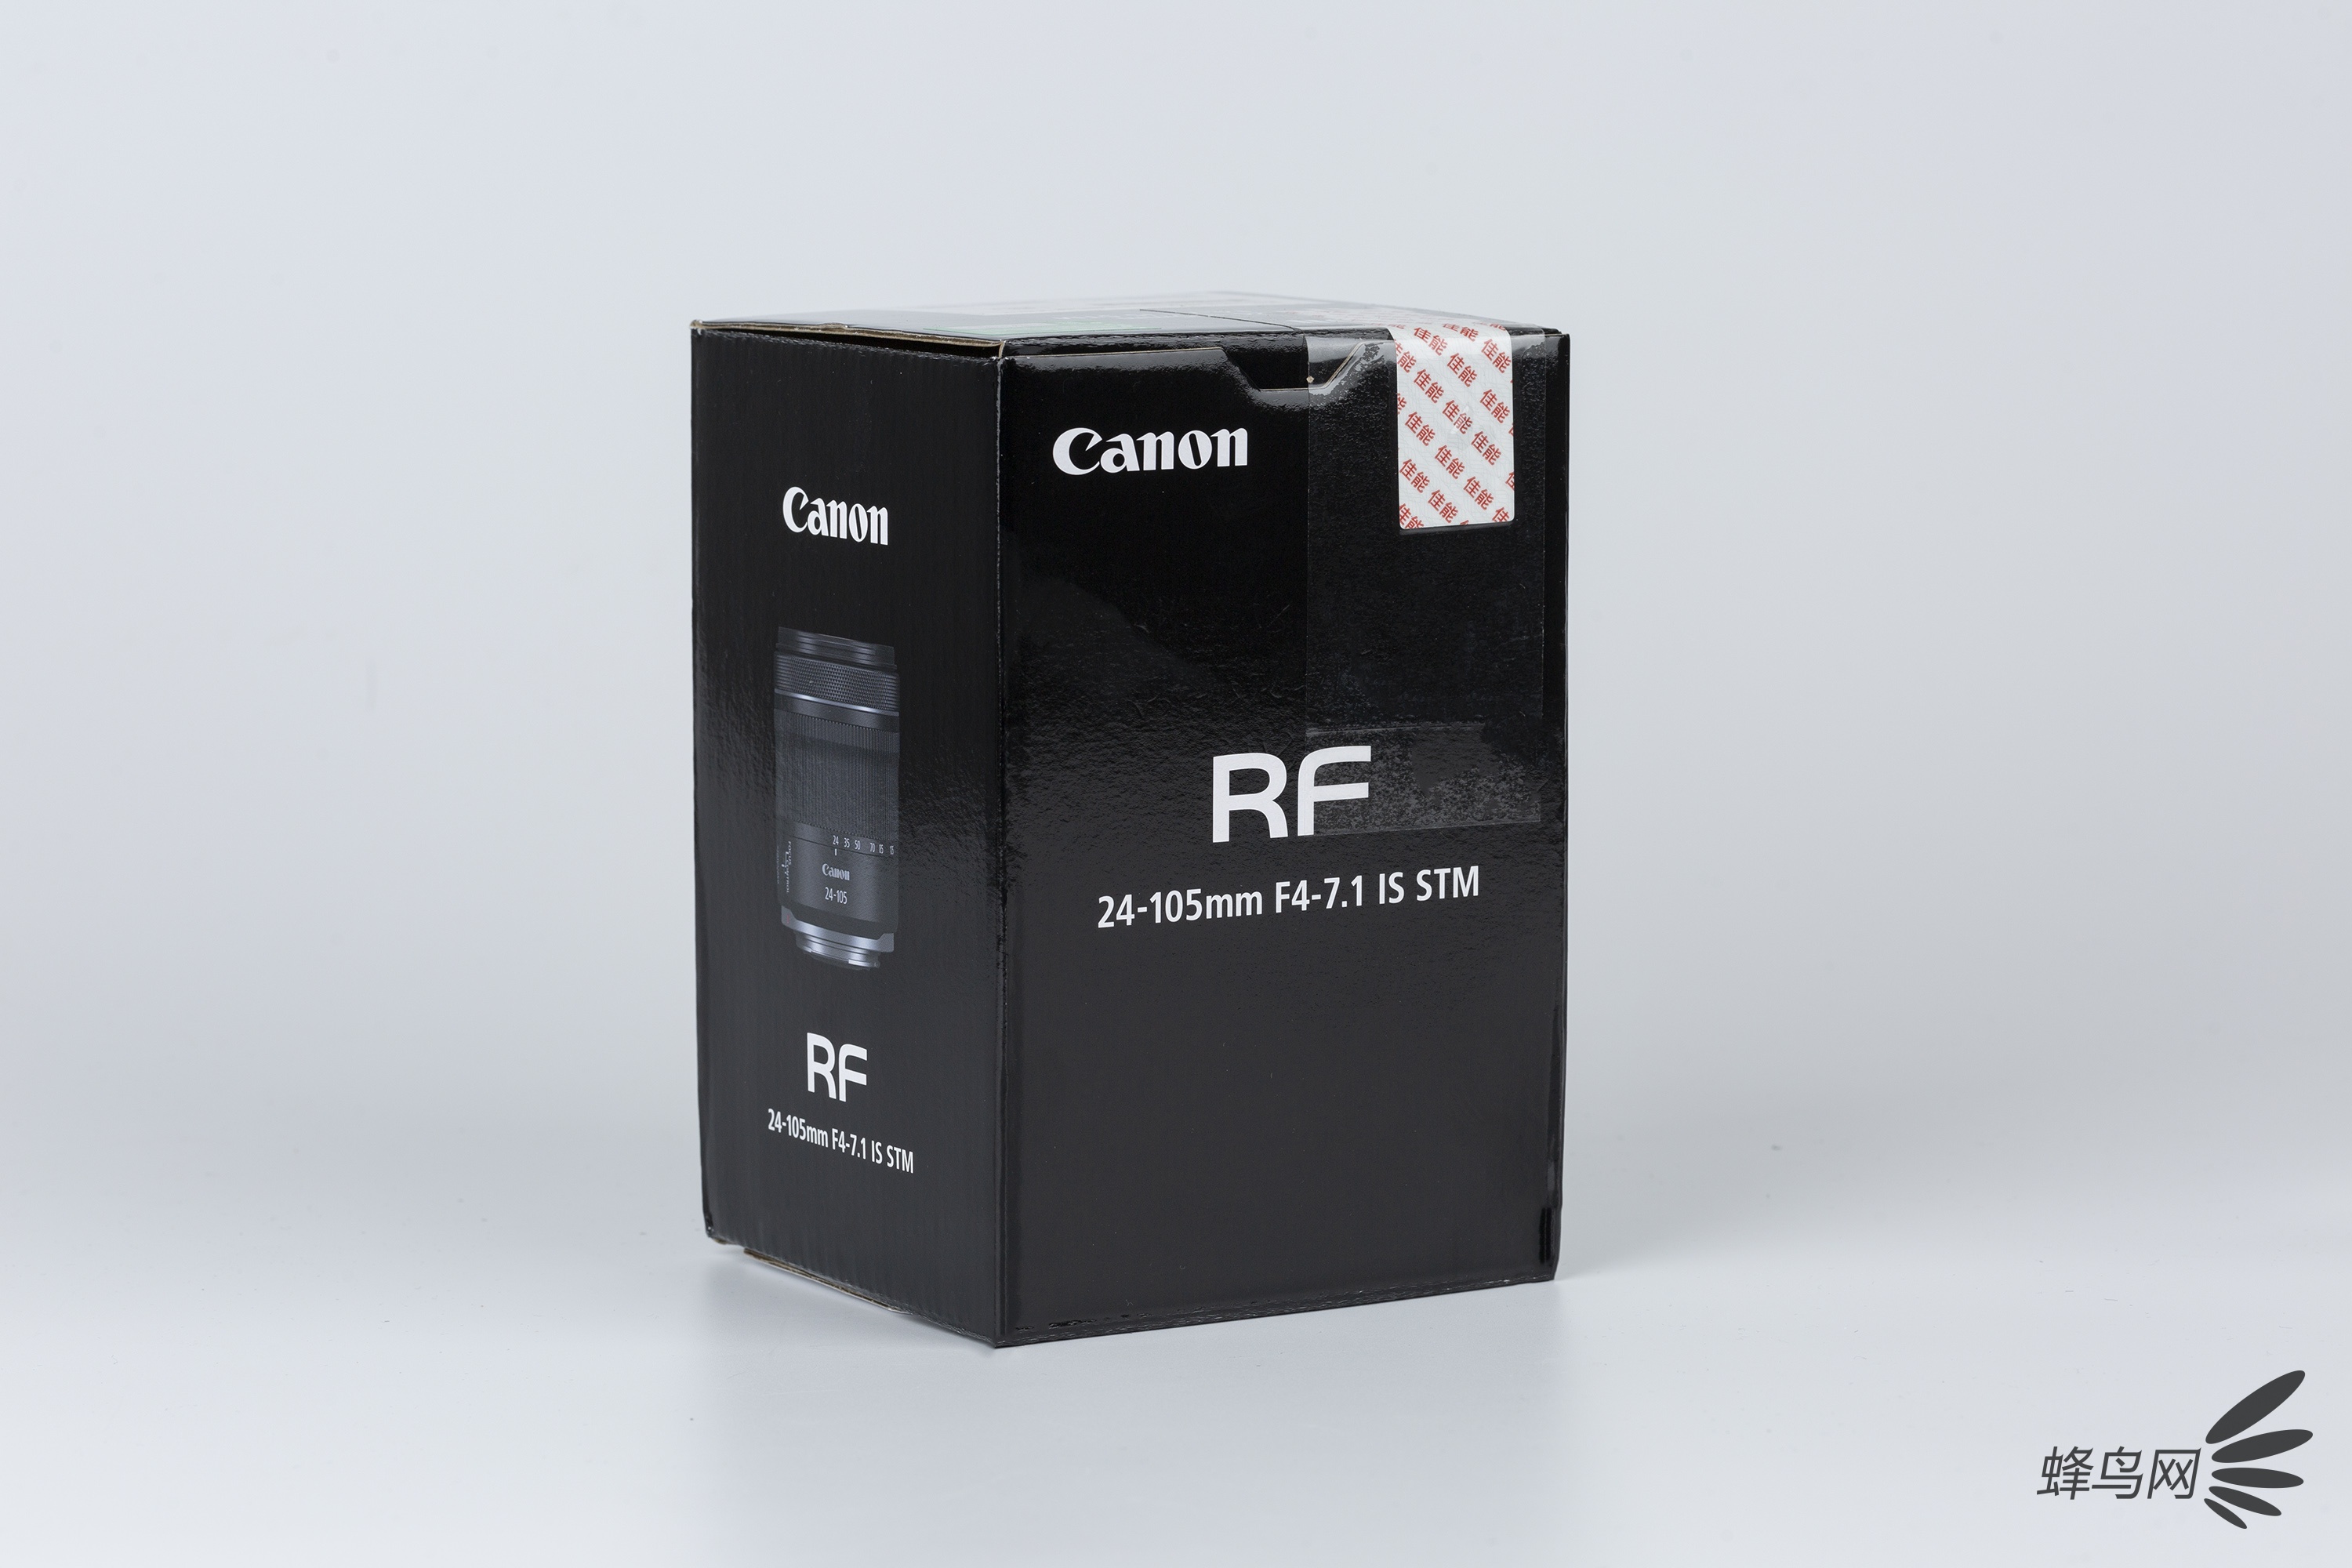 轻便全幅变焦头 佳能RF24-105mm F4-7.1图赏